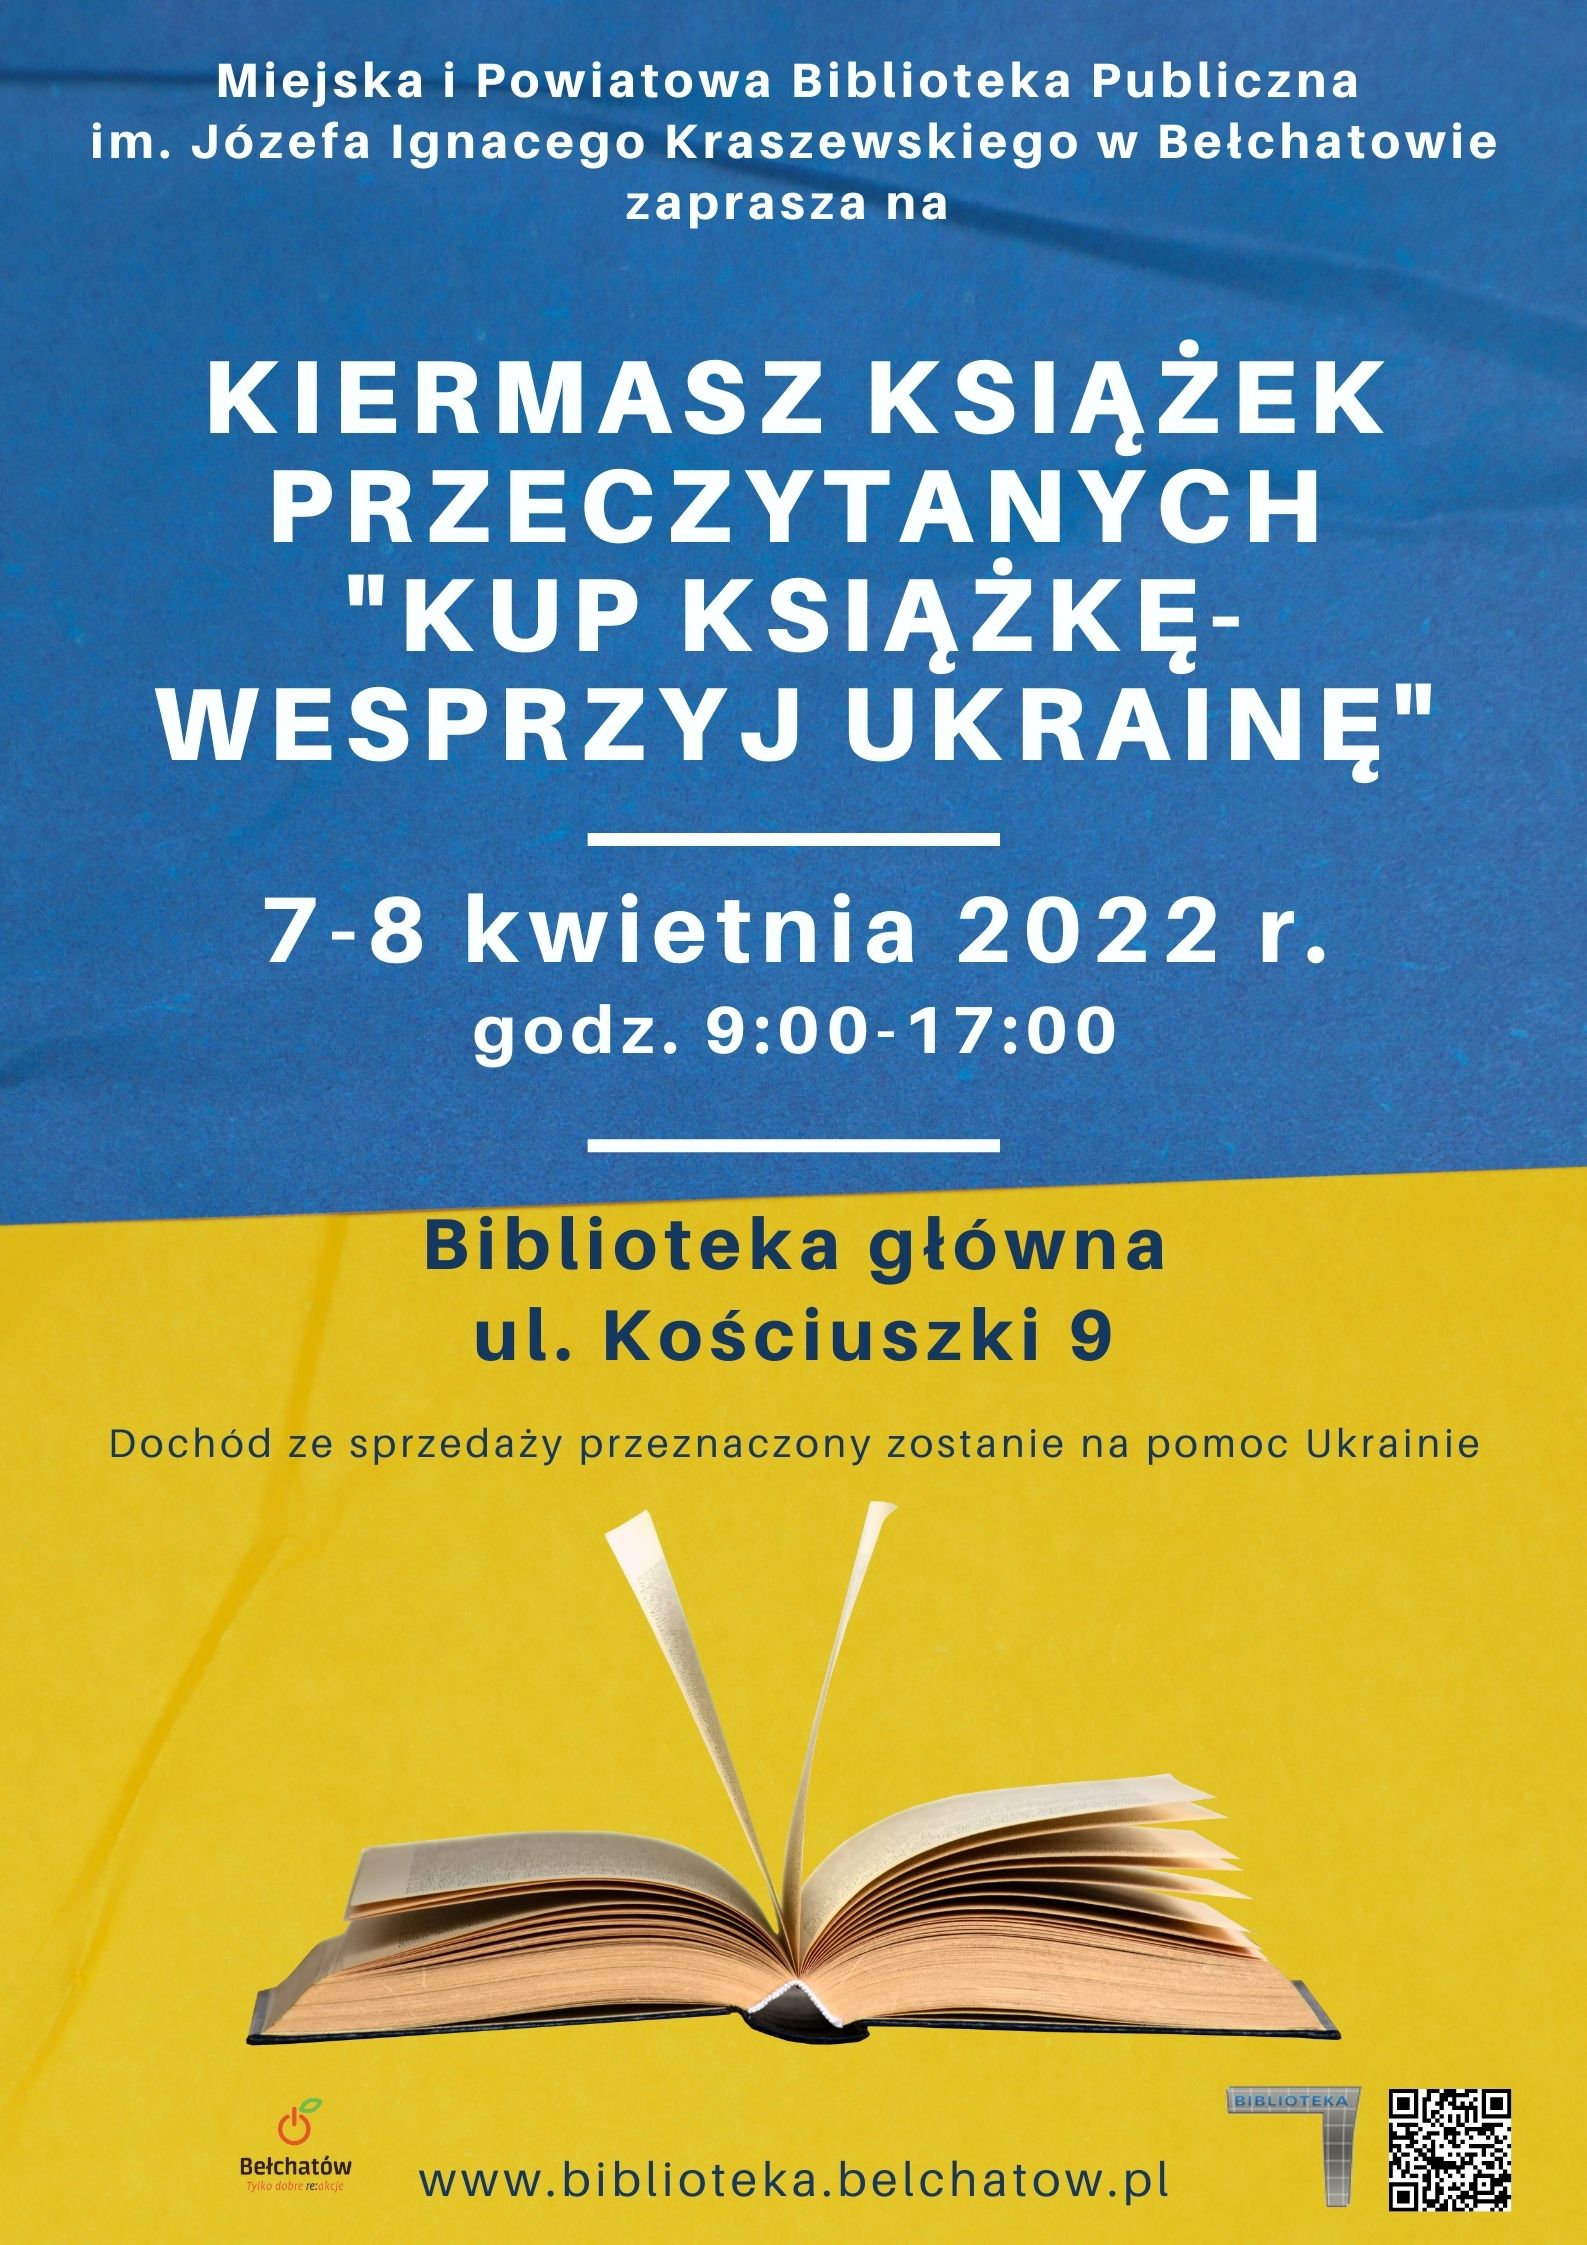 Plakat promujący kiermasz książek w bełchatowskiej bibliotece